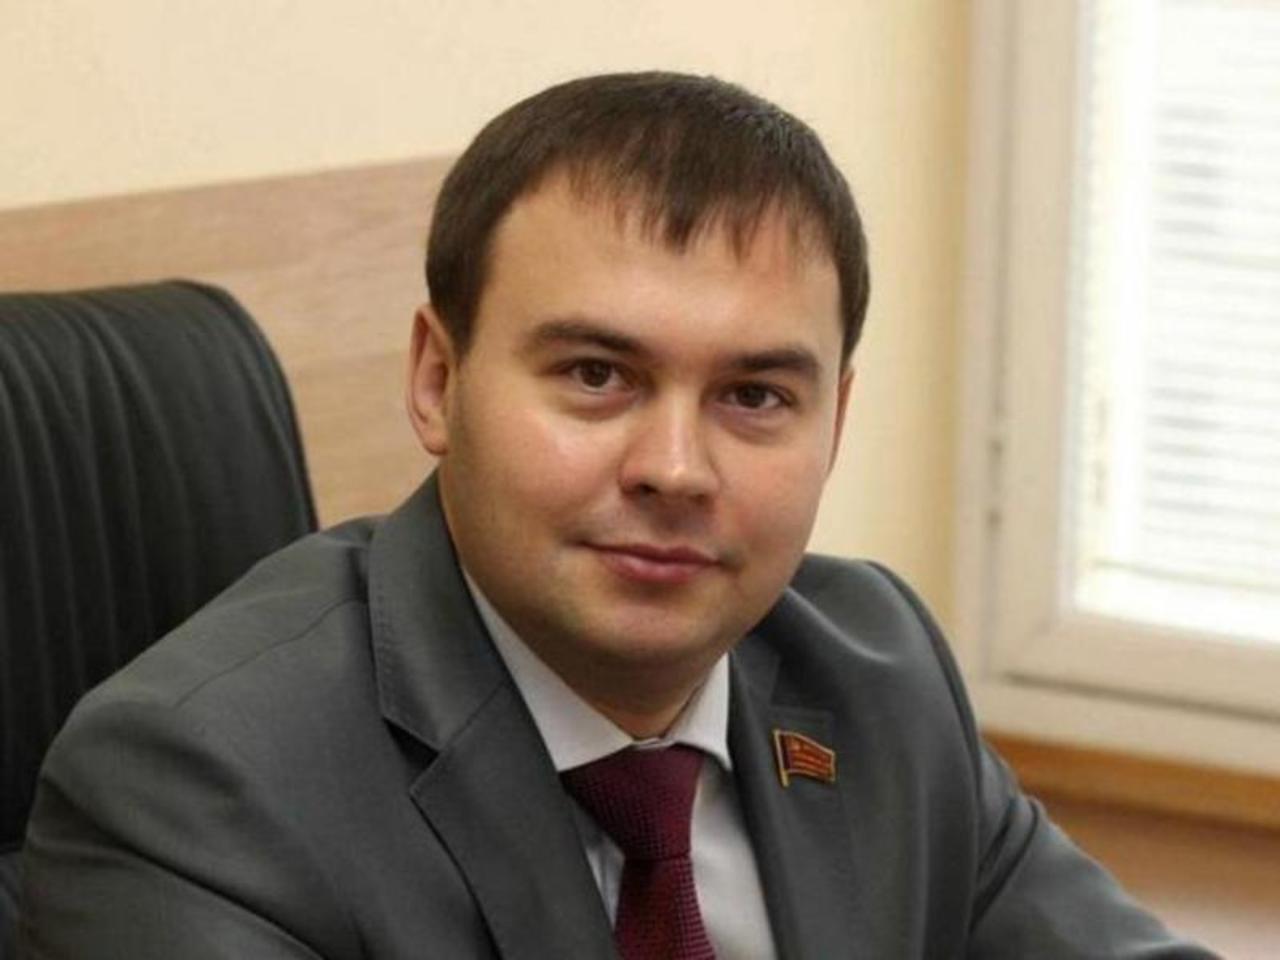 Юрий Афонин: «Режим повышенной готовности» фактически стал прикрытием для полицейского произвола